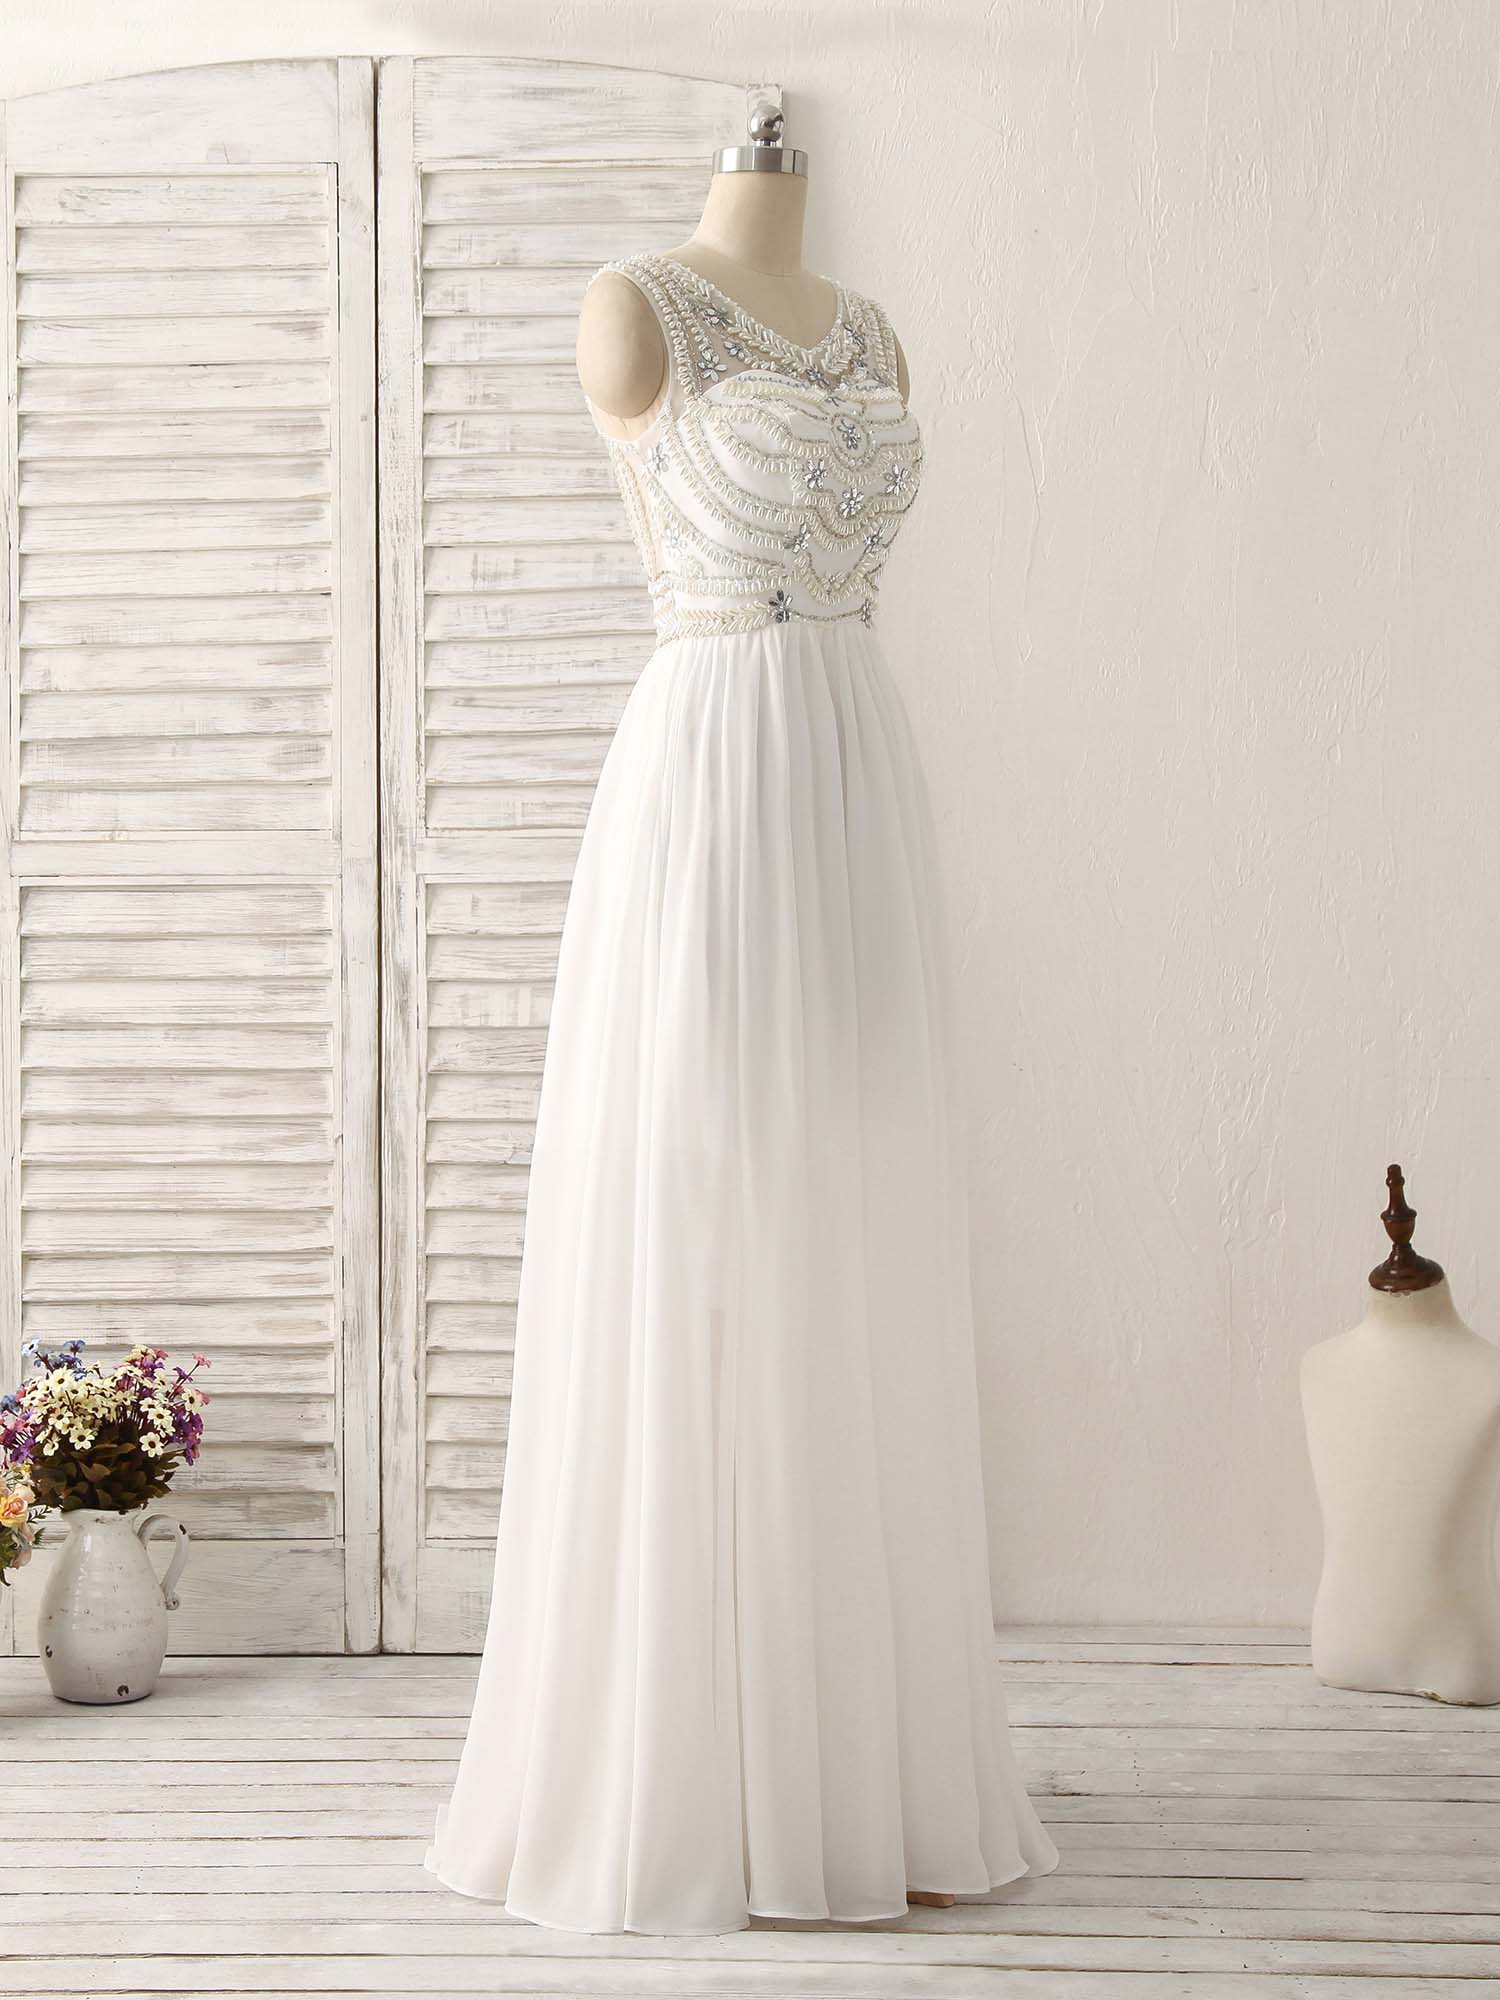 Homecomming Dresses Bodycon, White V Neck Chiffon Long Prom Dresses, White Long Evening Dresses